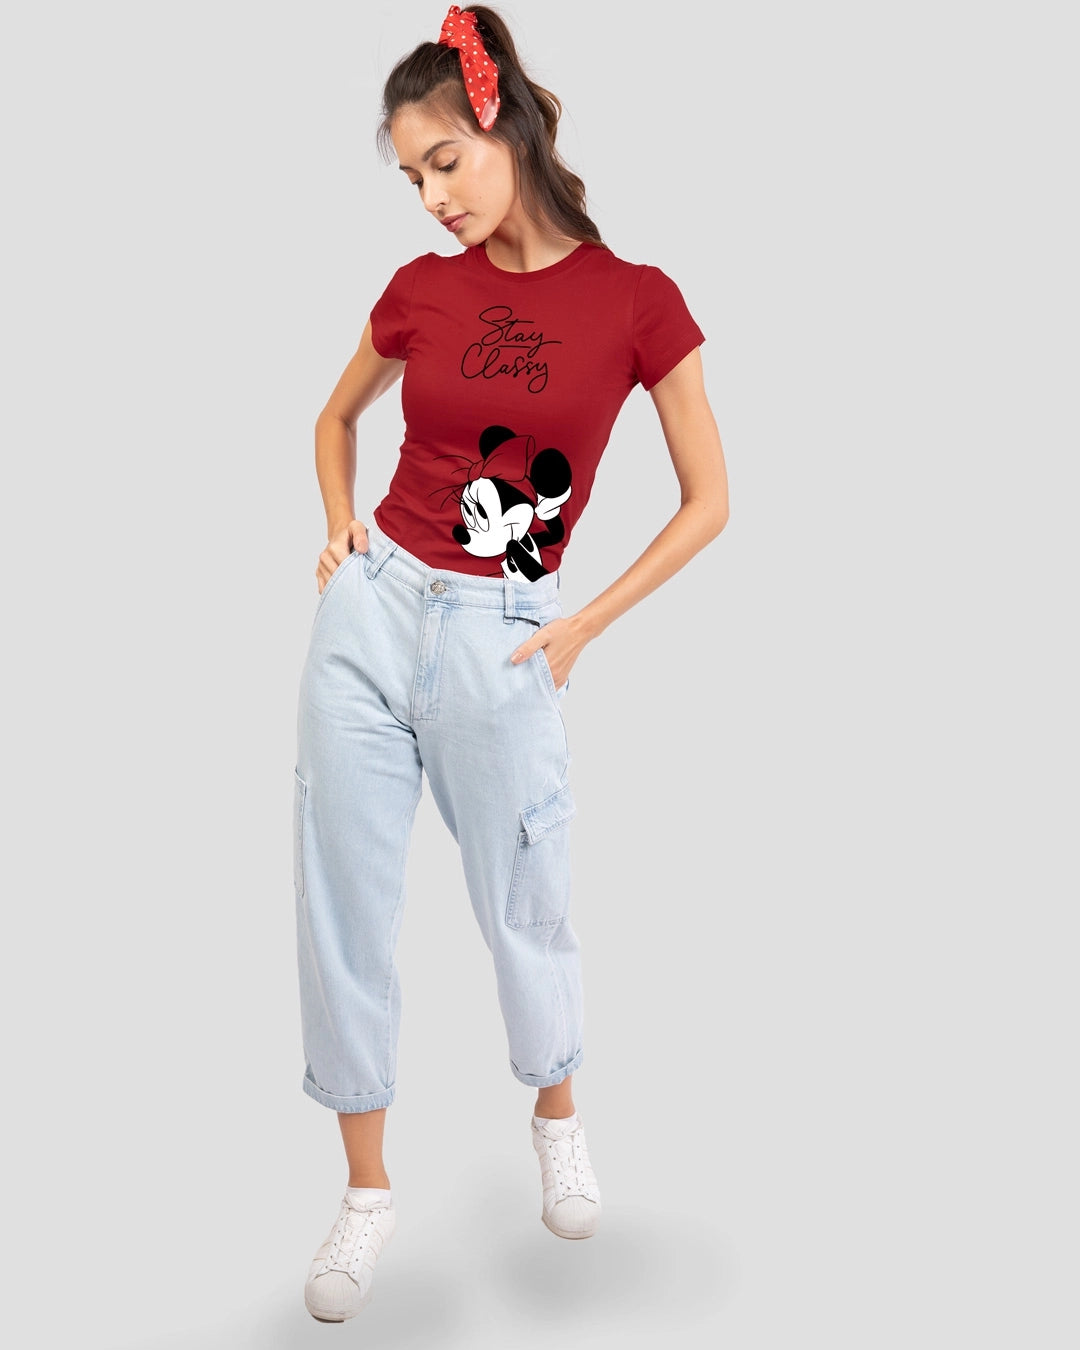 Women's Red Stay Classy Minnie Slim Fit T-shirt